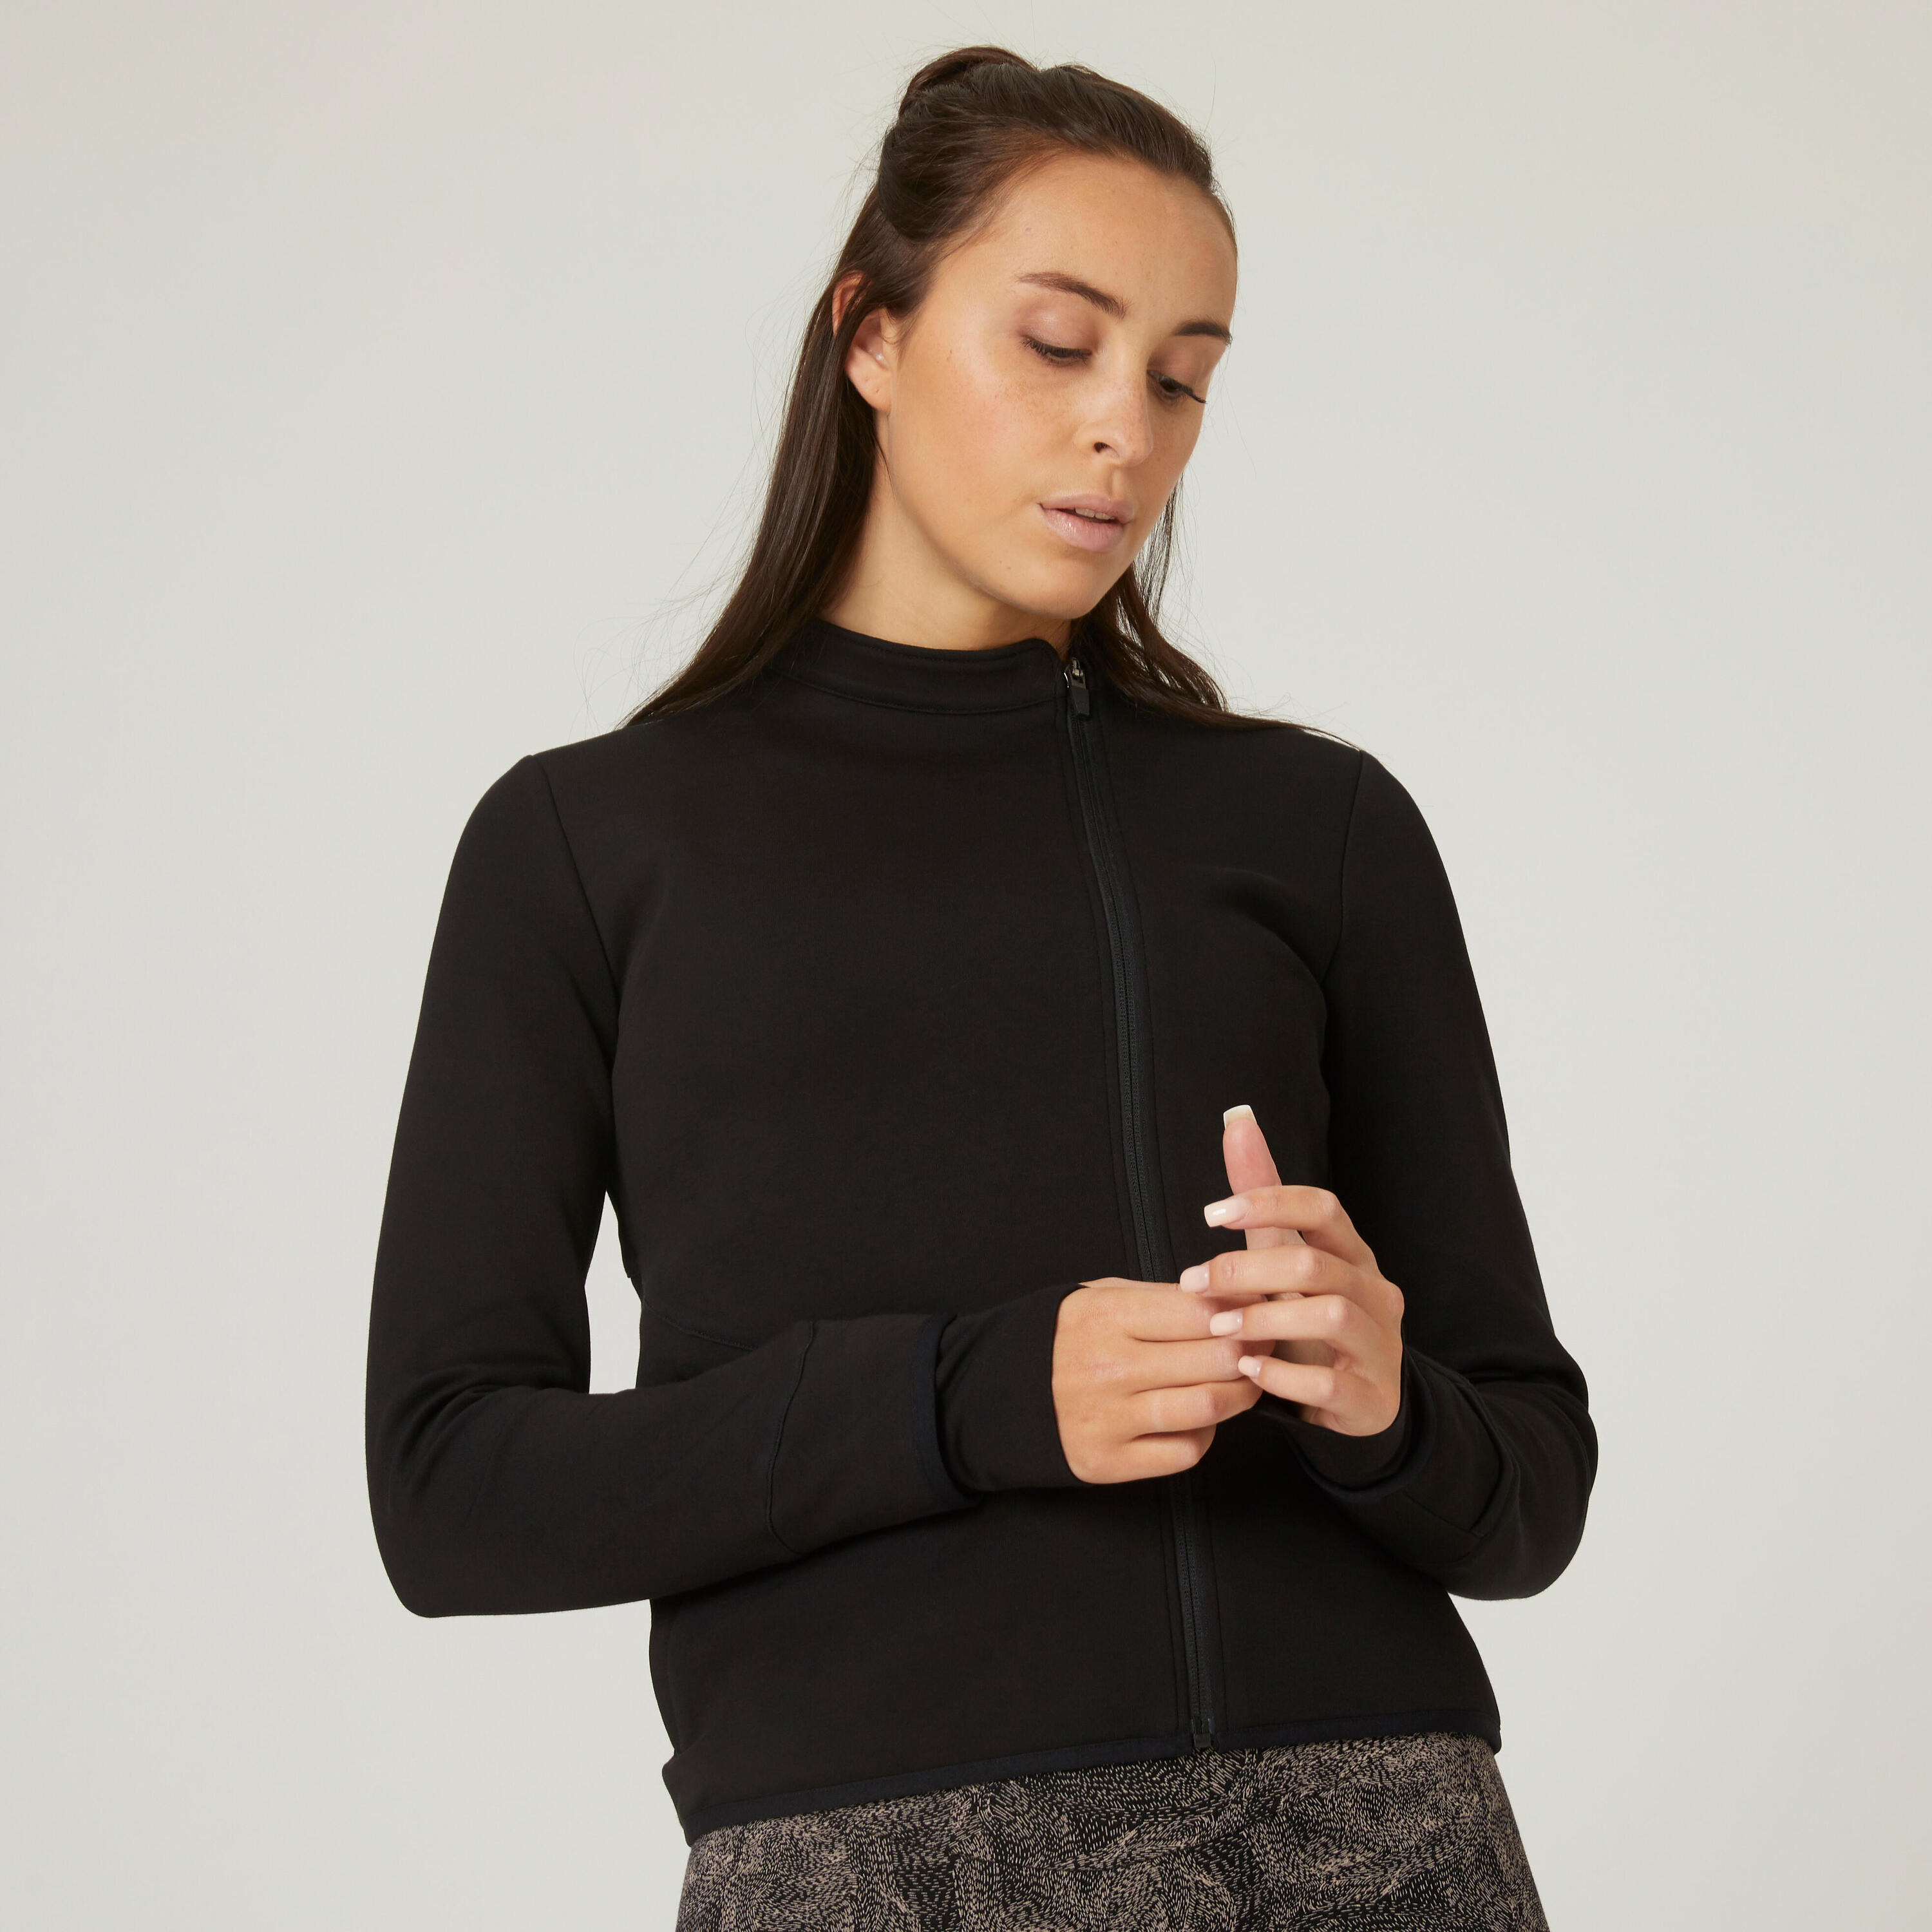 DOMYOS Women's Fitness Zip Sweatshirt 500 - Spacer Black